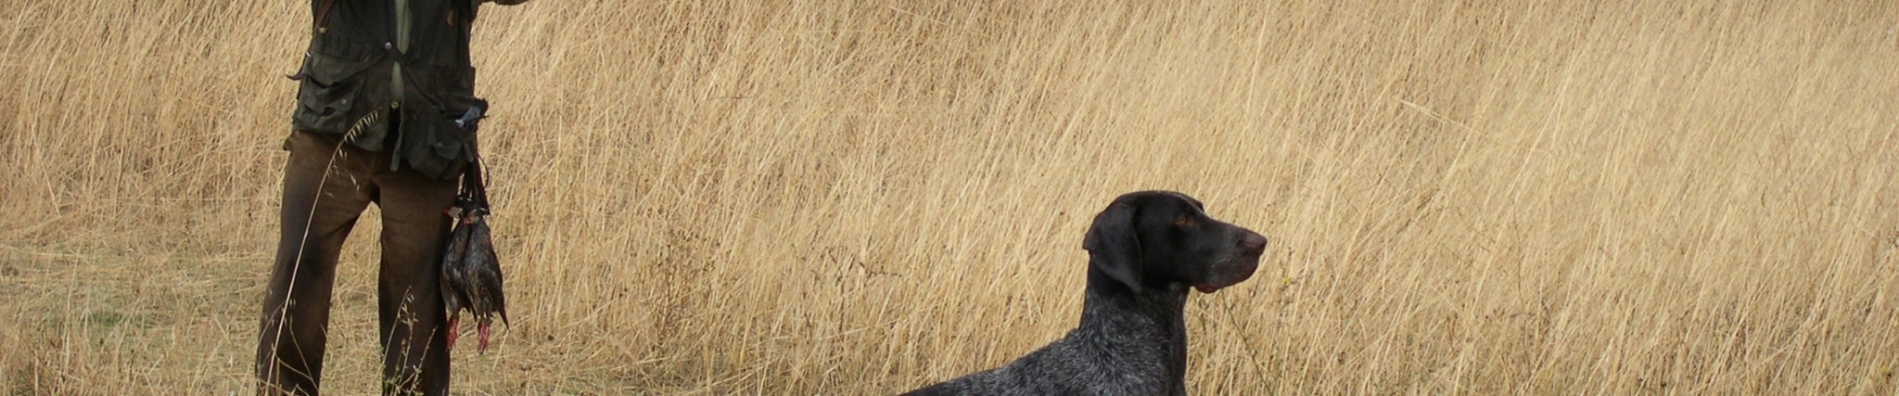 caza Imagen de archivo de un cazador junto a su perro.